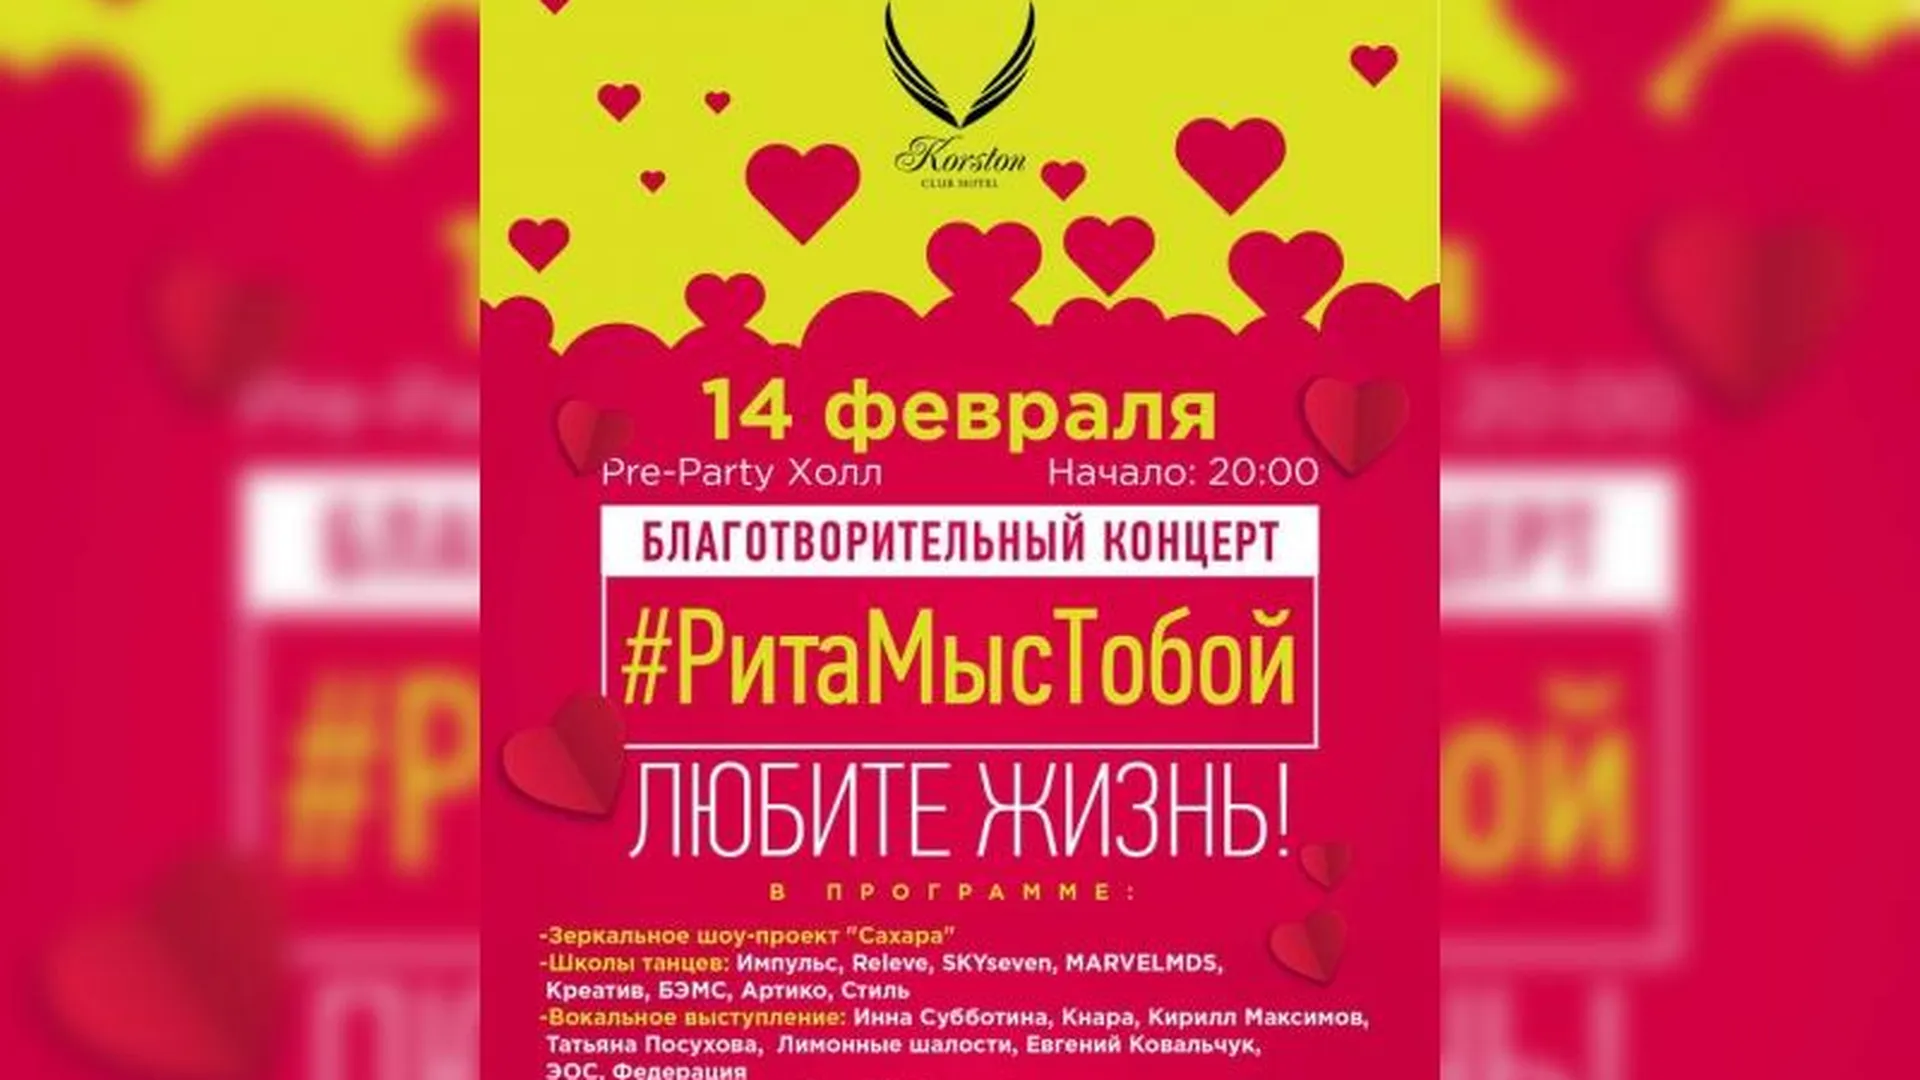 Благотворительный концерт в поддержку Риты, которой муж отрубил руки, состоится в Серпухове